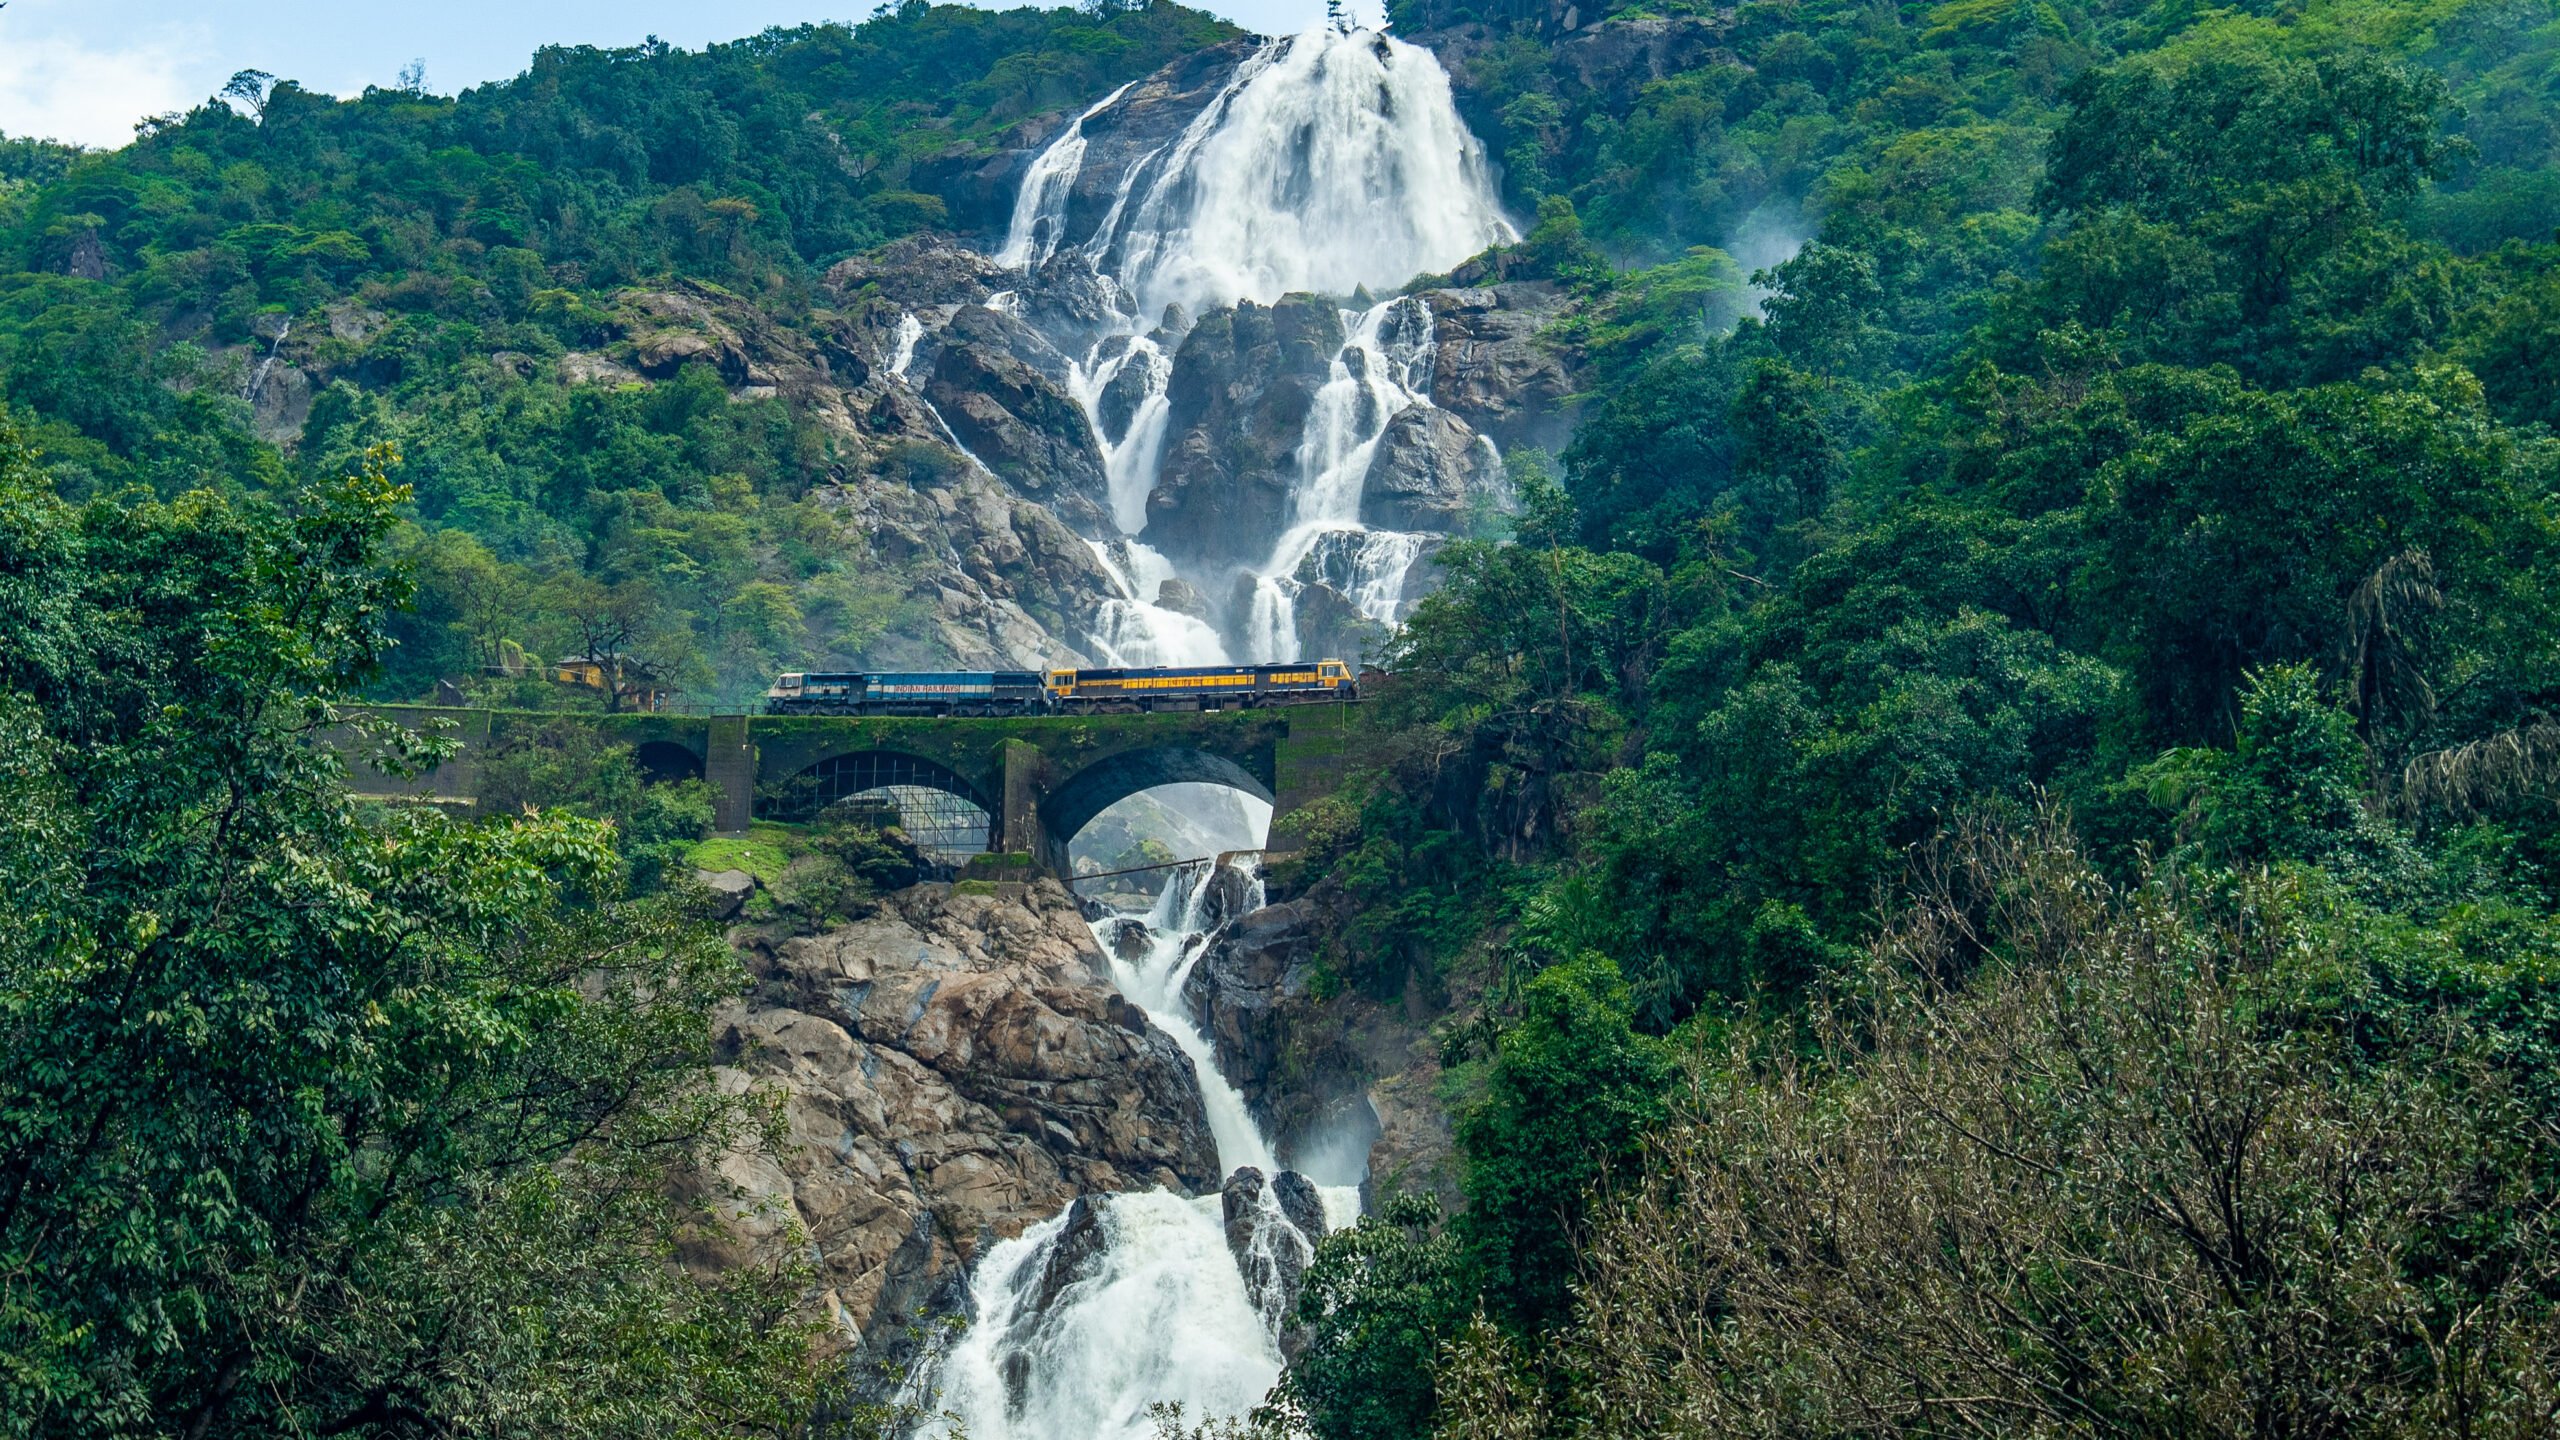 Train passing through the bridge Dudhsagar waterfall